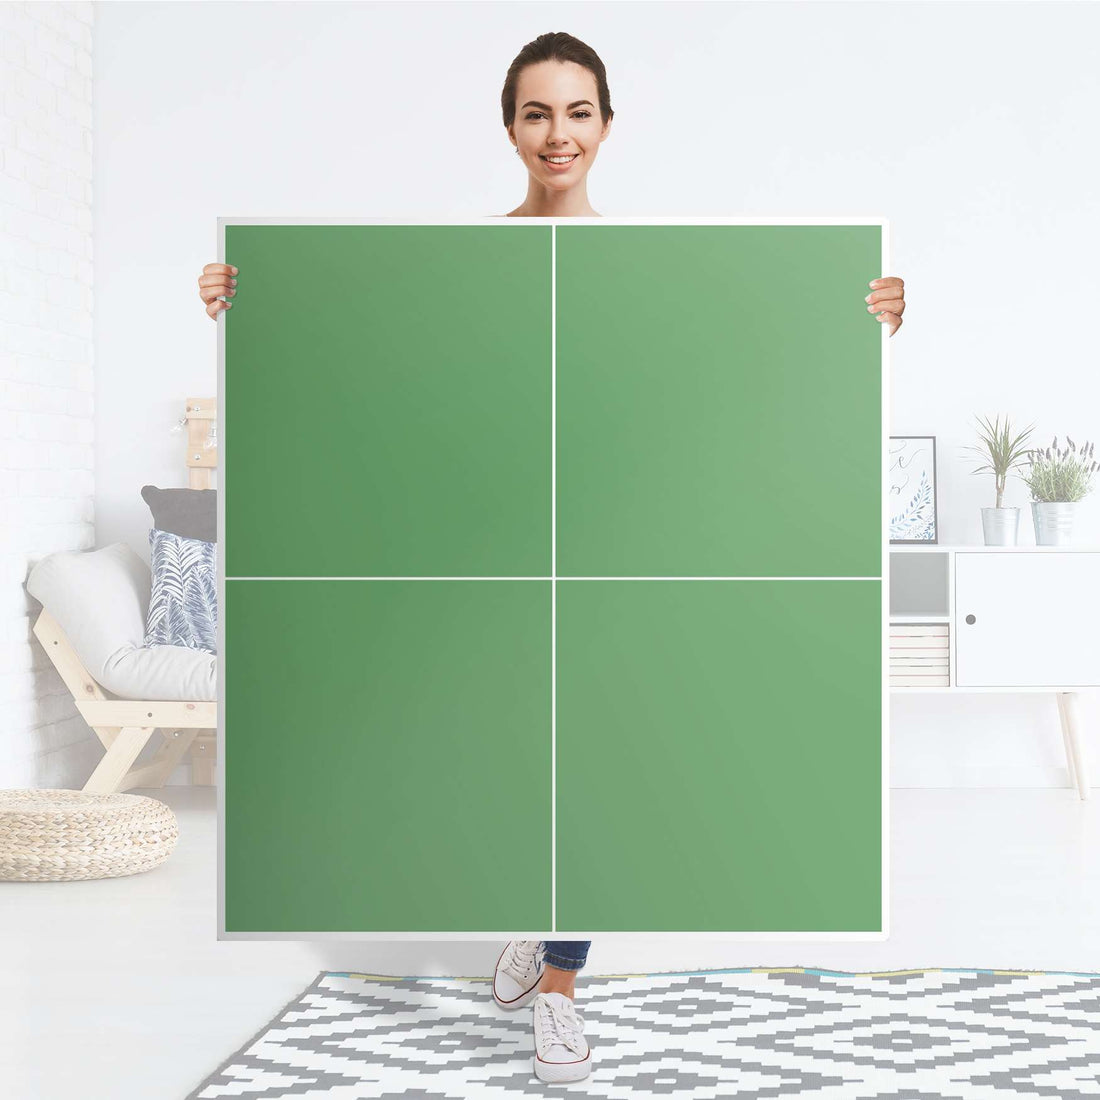 Klebefolie für Schränke Grün Light - IKEA Besta Schrank Quadratisch 4 Türen - Folie